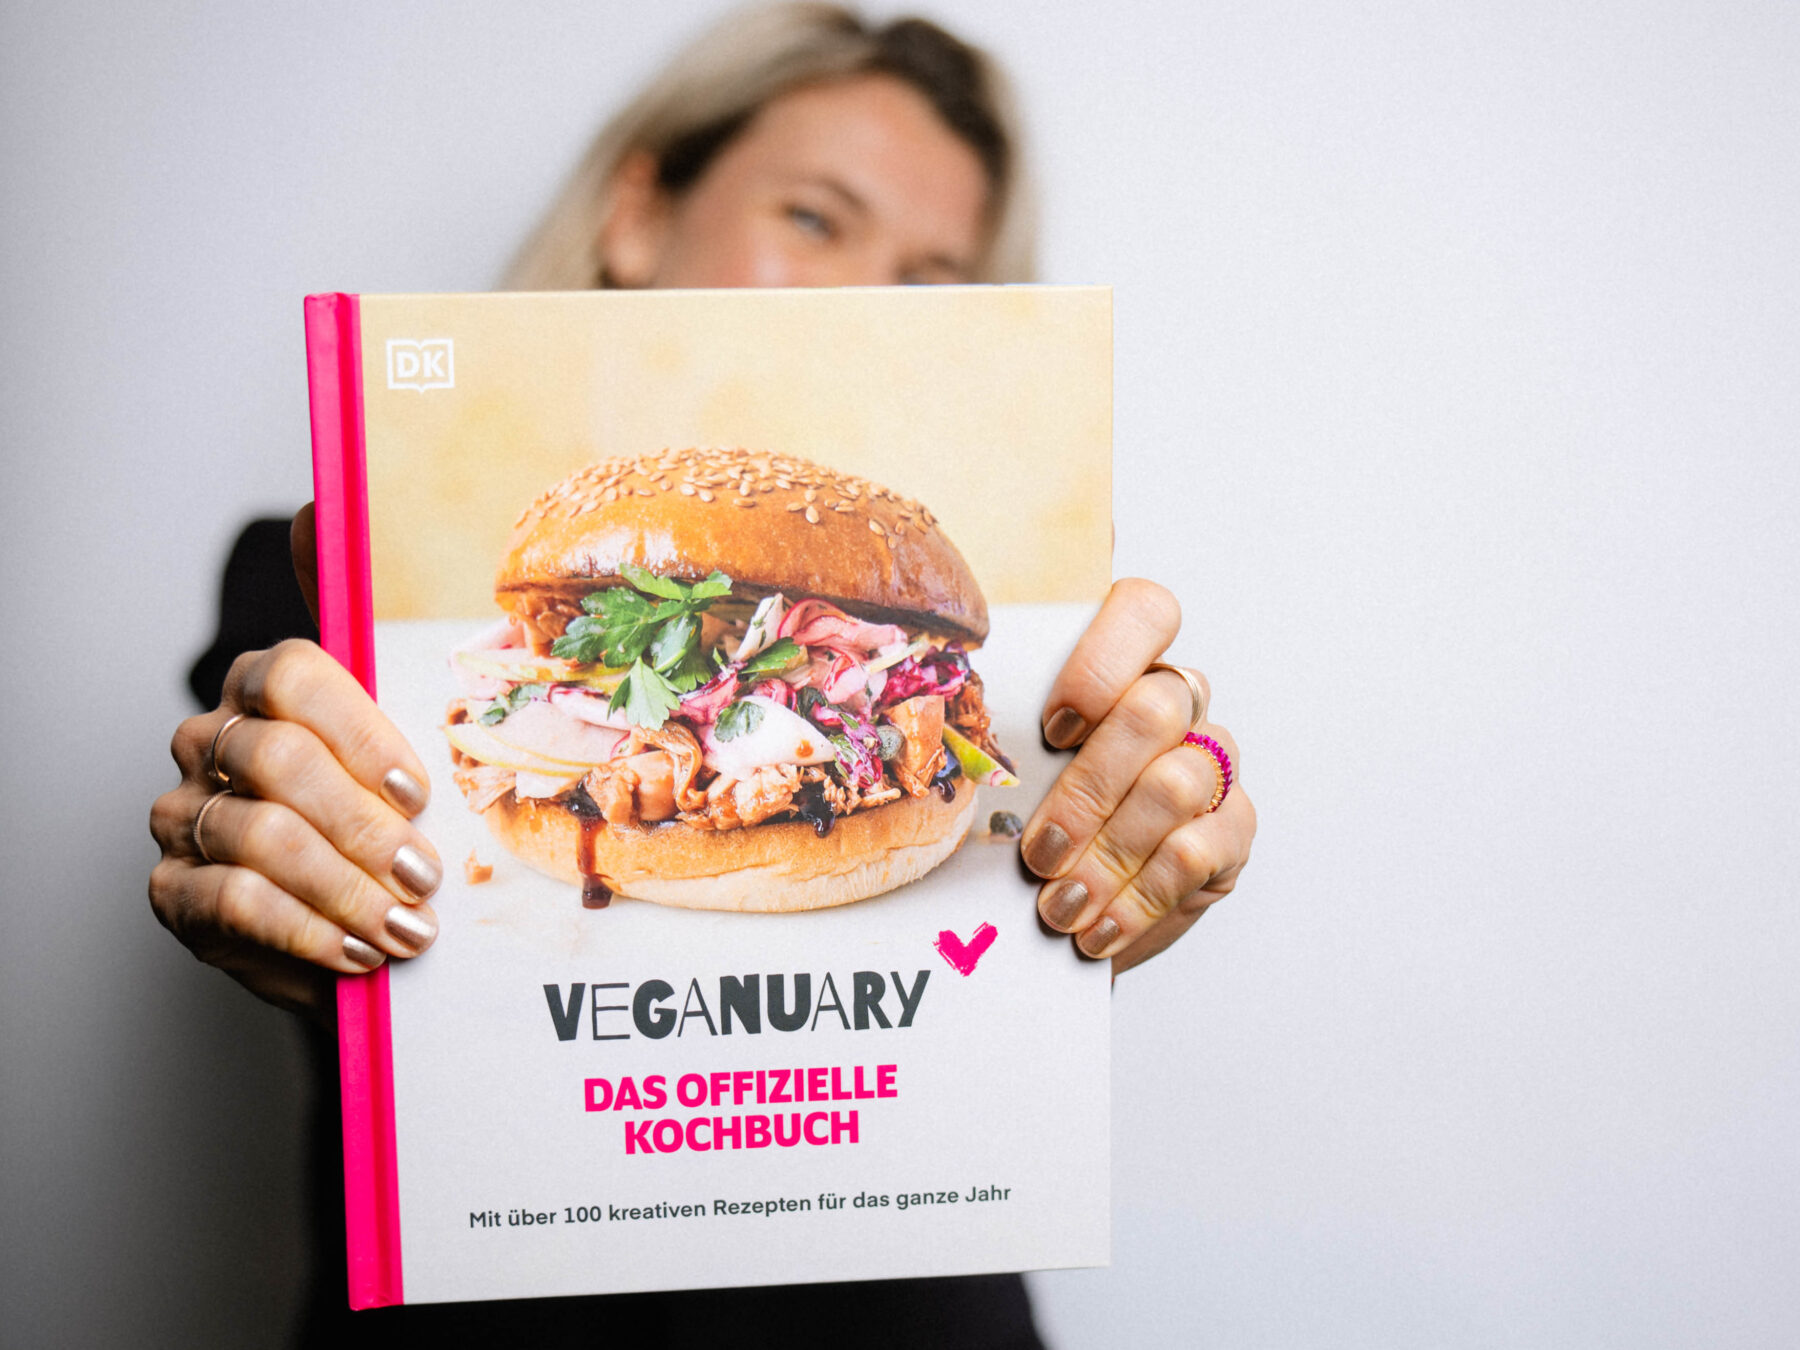 Kerstin Landsmann präsentiert das offizielle Veganuary Kochbuch